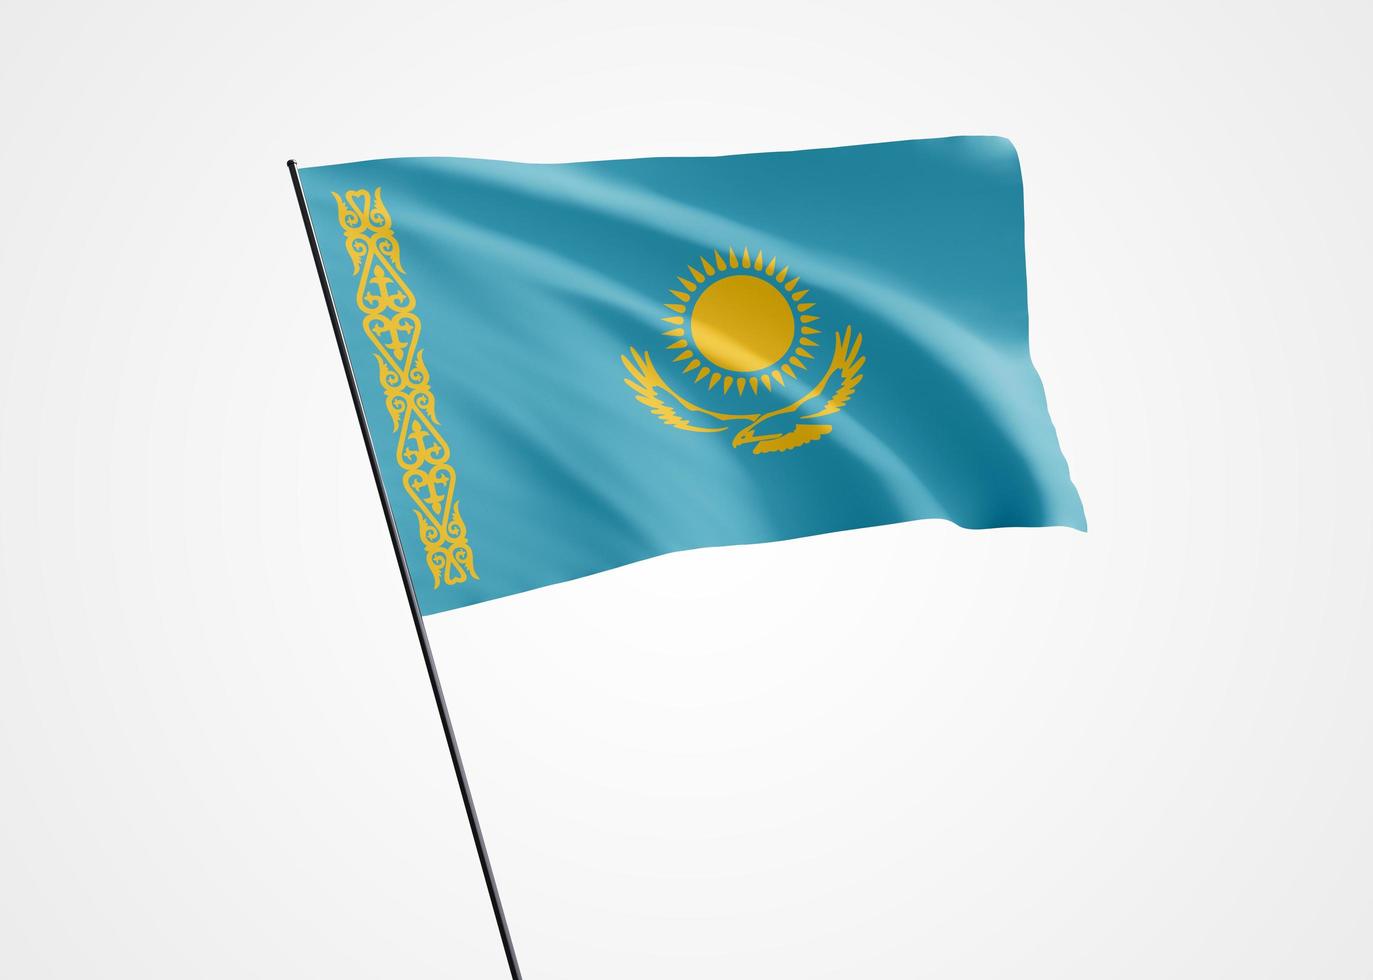 Kazachstan vlag hoog op de geïsoleerde achtergrond. 16 december onafhankelijkheidsdag Kazachstan. wereld nationale vlag collectie wereld nationale vlag collectie foto